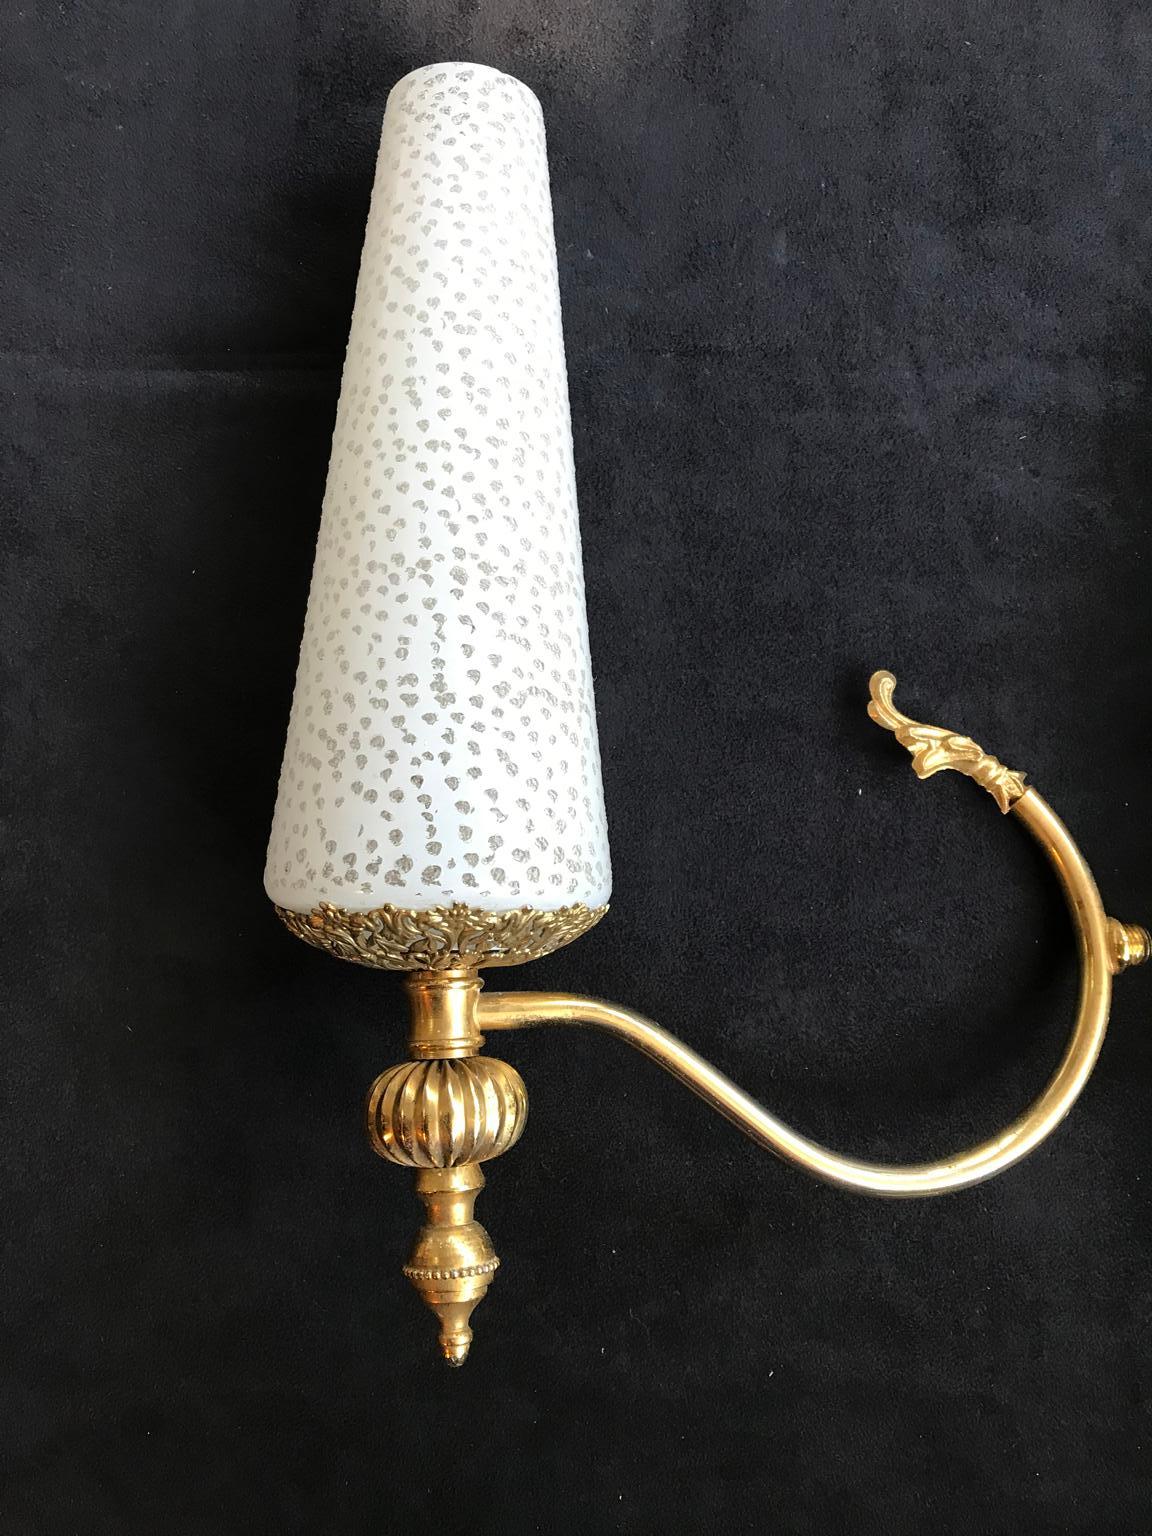 Französisch Paar Wandlampen aus vergoldetem Metall und dekoriert weiße Gläser. Midcentury-Stil.
Maße: Durchmesser der Stütze 1 cm
Gewicht: 0,8 kg.